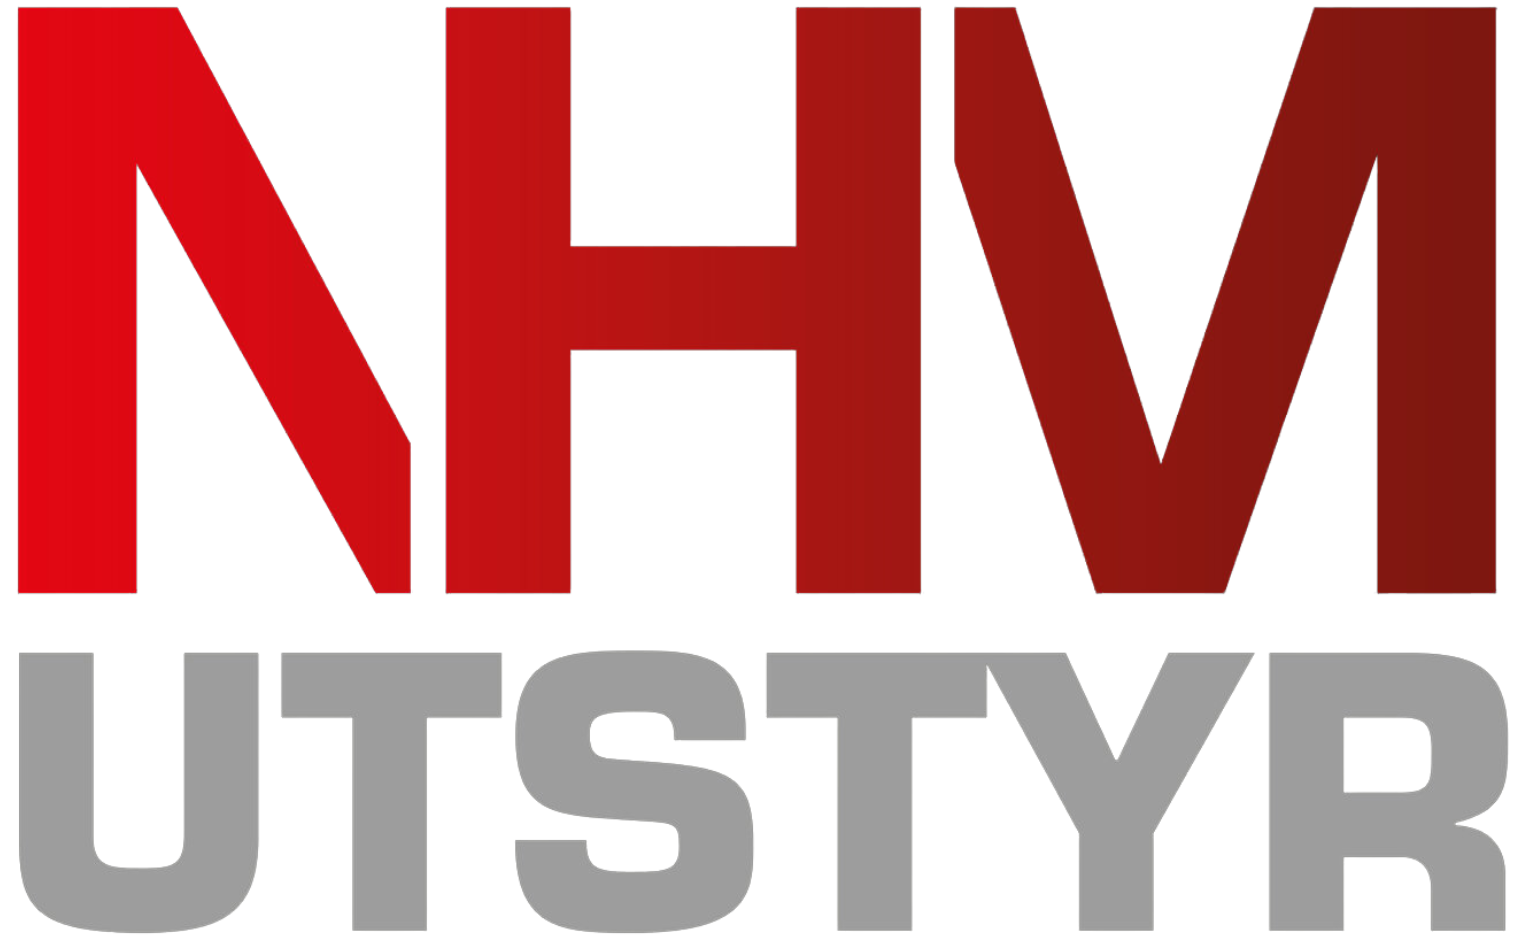 NHM Utstyr logo: Stilig design med røde bokstaver for "NHM" og grå bokstaver for "UTSTYR".